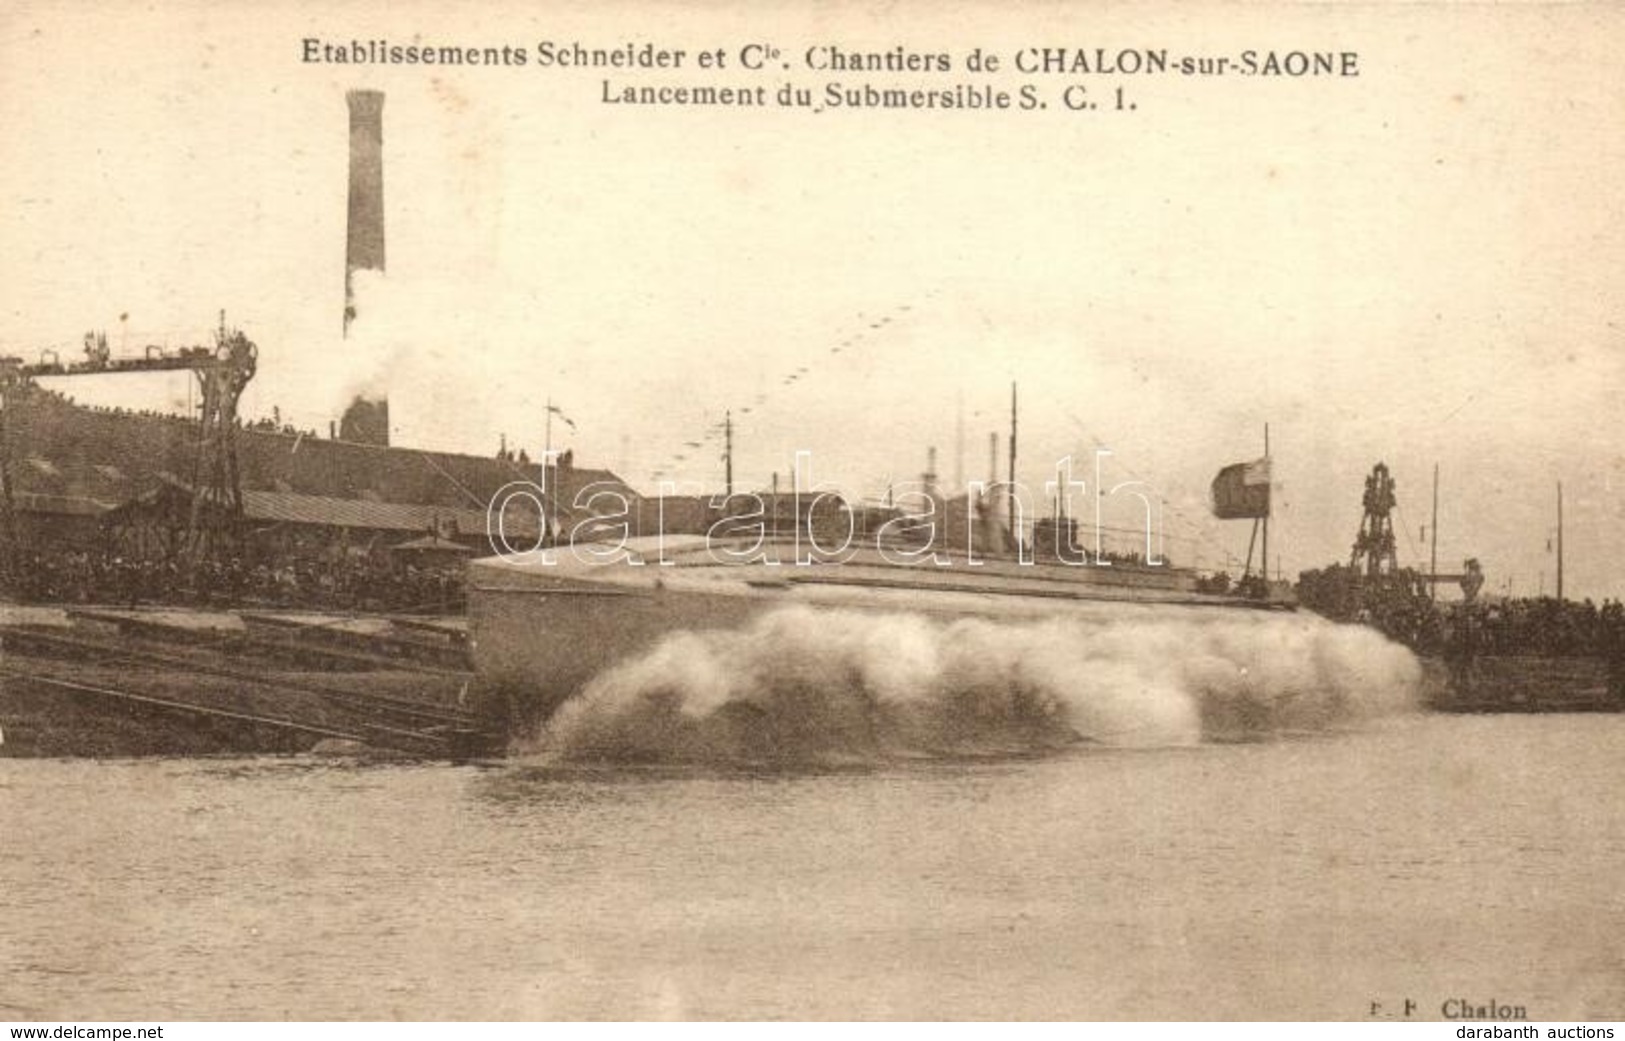 * T2 Chalon-sur-Saone, Etablissements Schneider Et Cie, Lancement Du Submersible S.C.I. / Marine Nationale. French Navy  - Unclassified